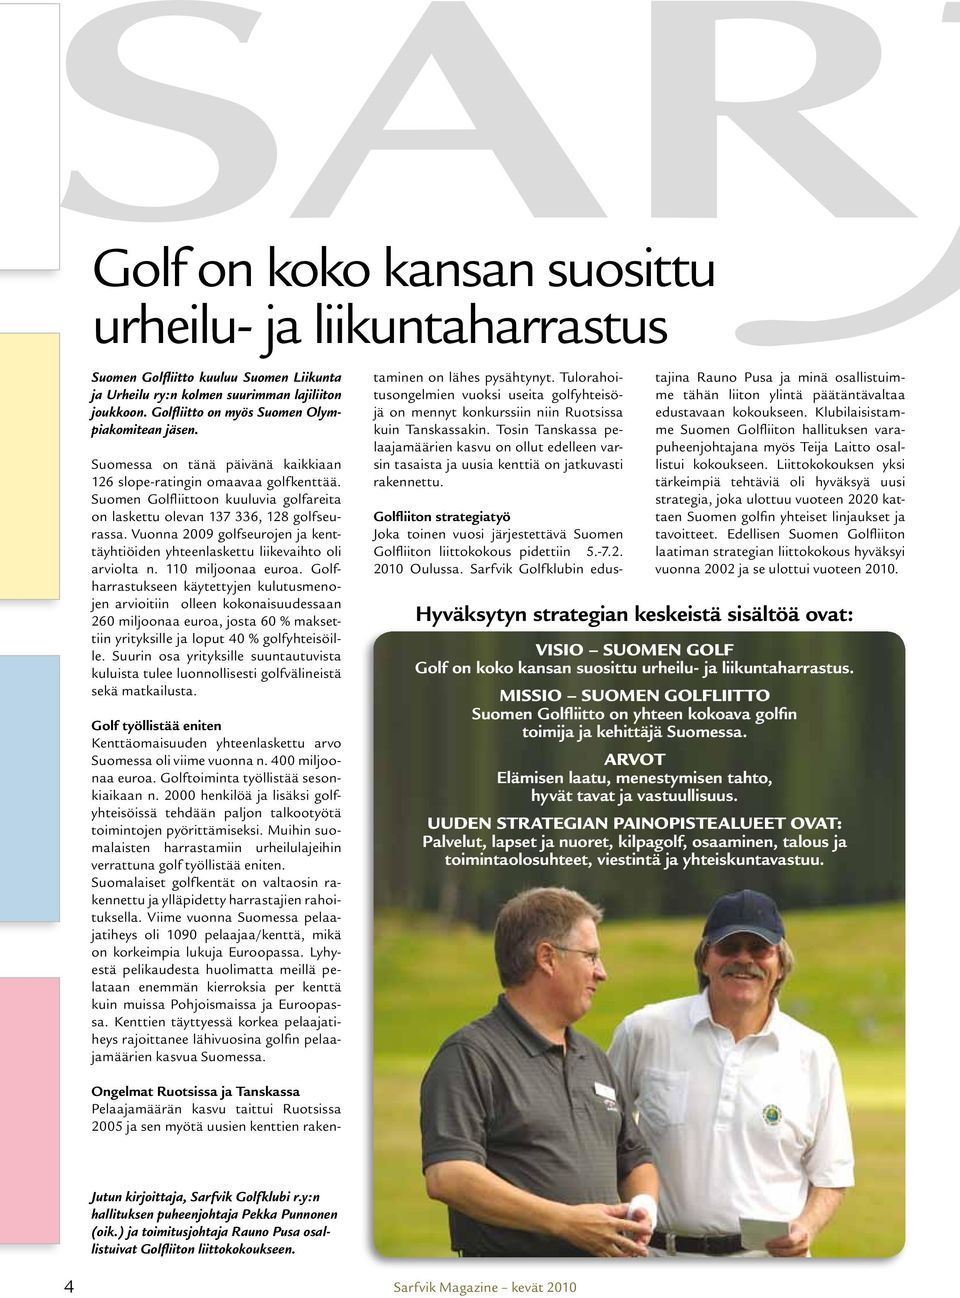 Suomen Golfliittoon kuuluvia golfareita on laskettu olevan 137 336, 128 golfseurassa. Vuonna 2009 golfseurojen ja kenttäyhtiöiden yhteenlaskettu liikevaihto oli arviolta n. 110 miljoonaa euroa.